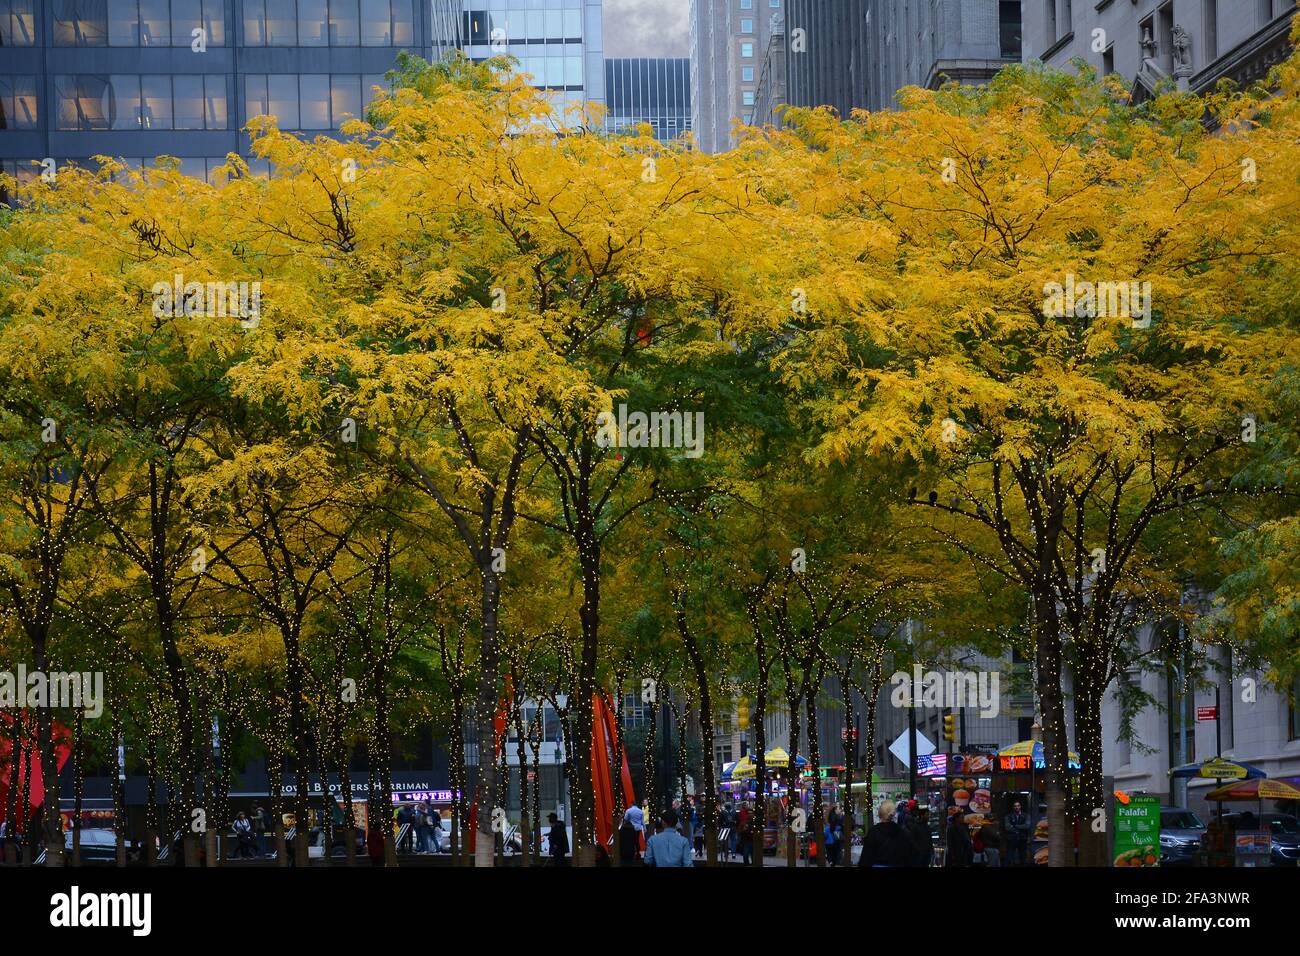 New York, NY - 05 NOV 2019: Zuccotti Park nel quartiere finanziario di Lower Manhattan con alberi in colori autunnali e avvolti da stringhe di luci. Foto Stock